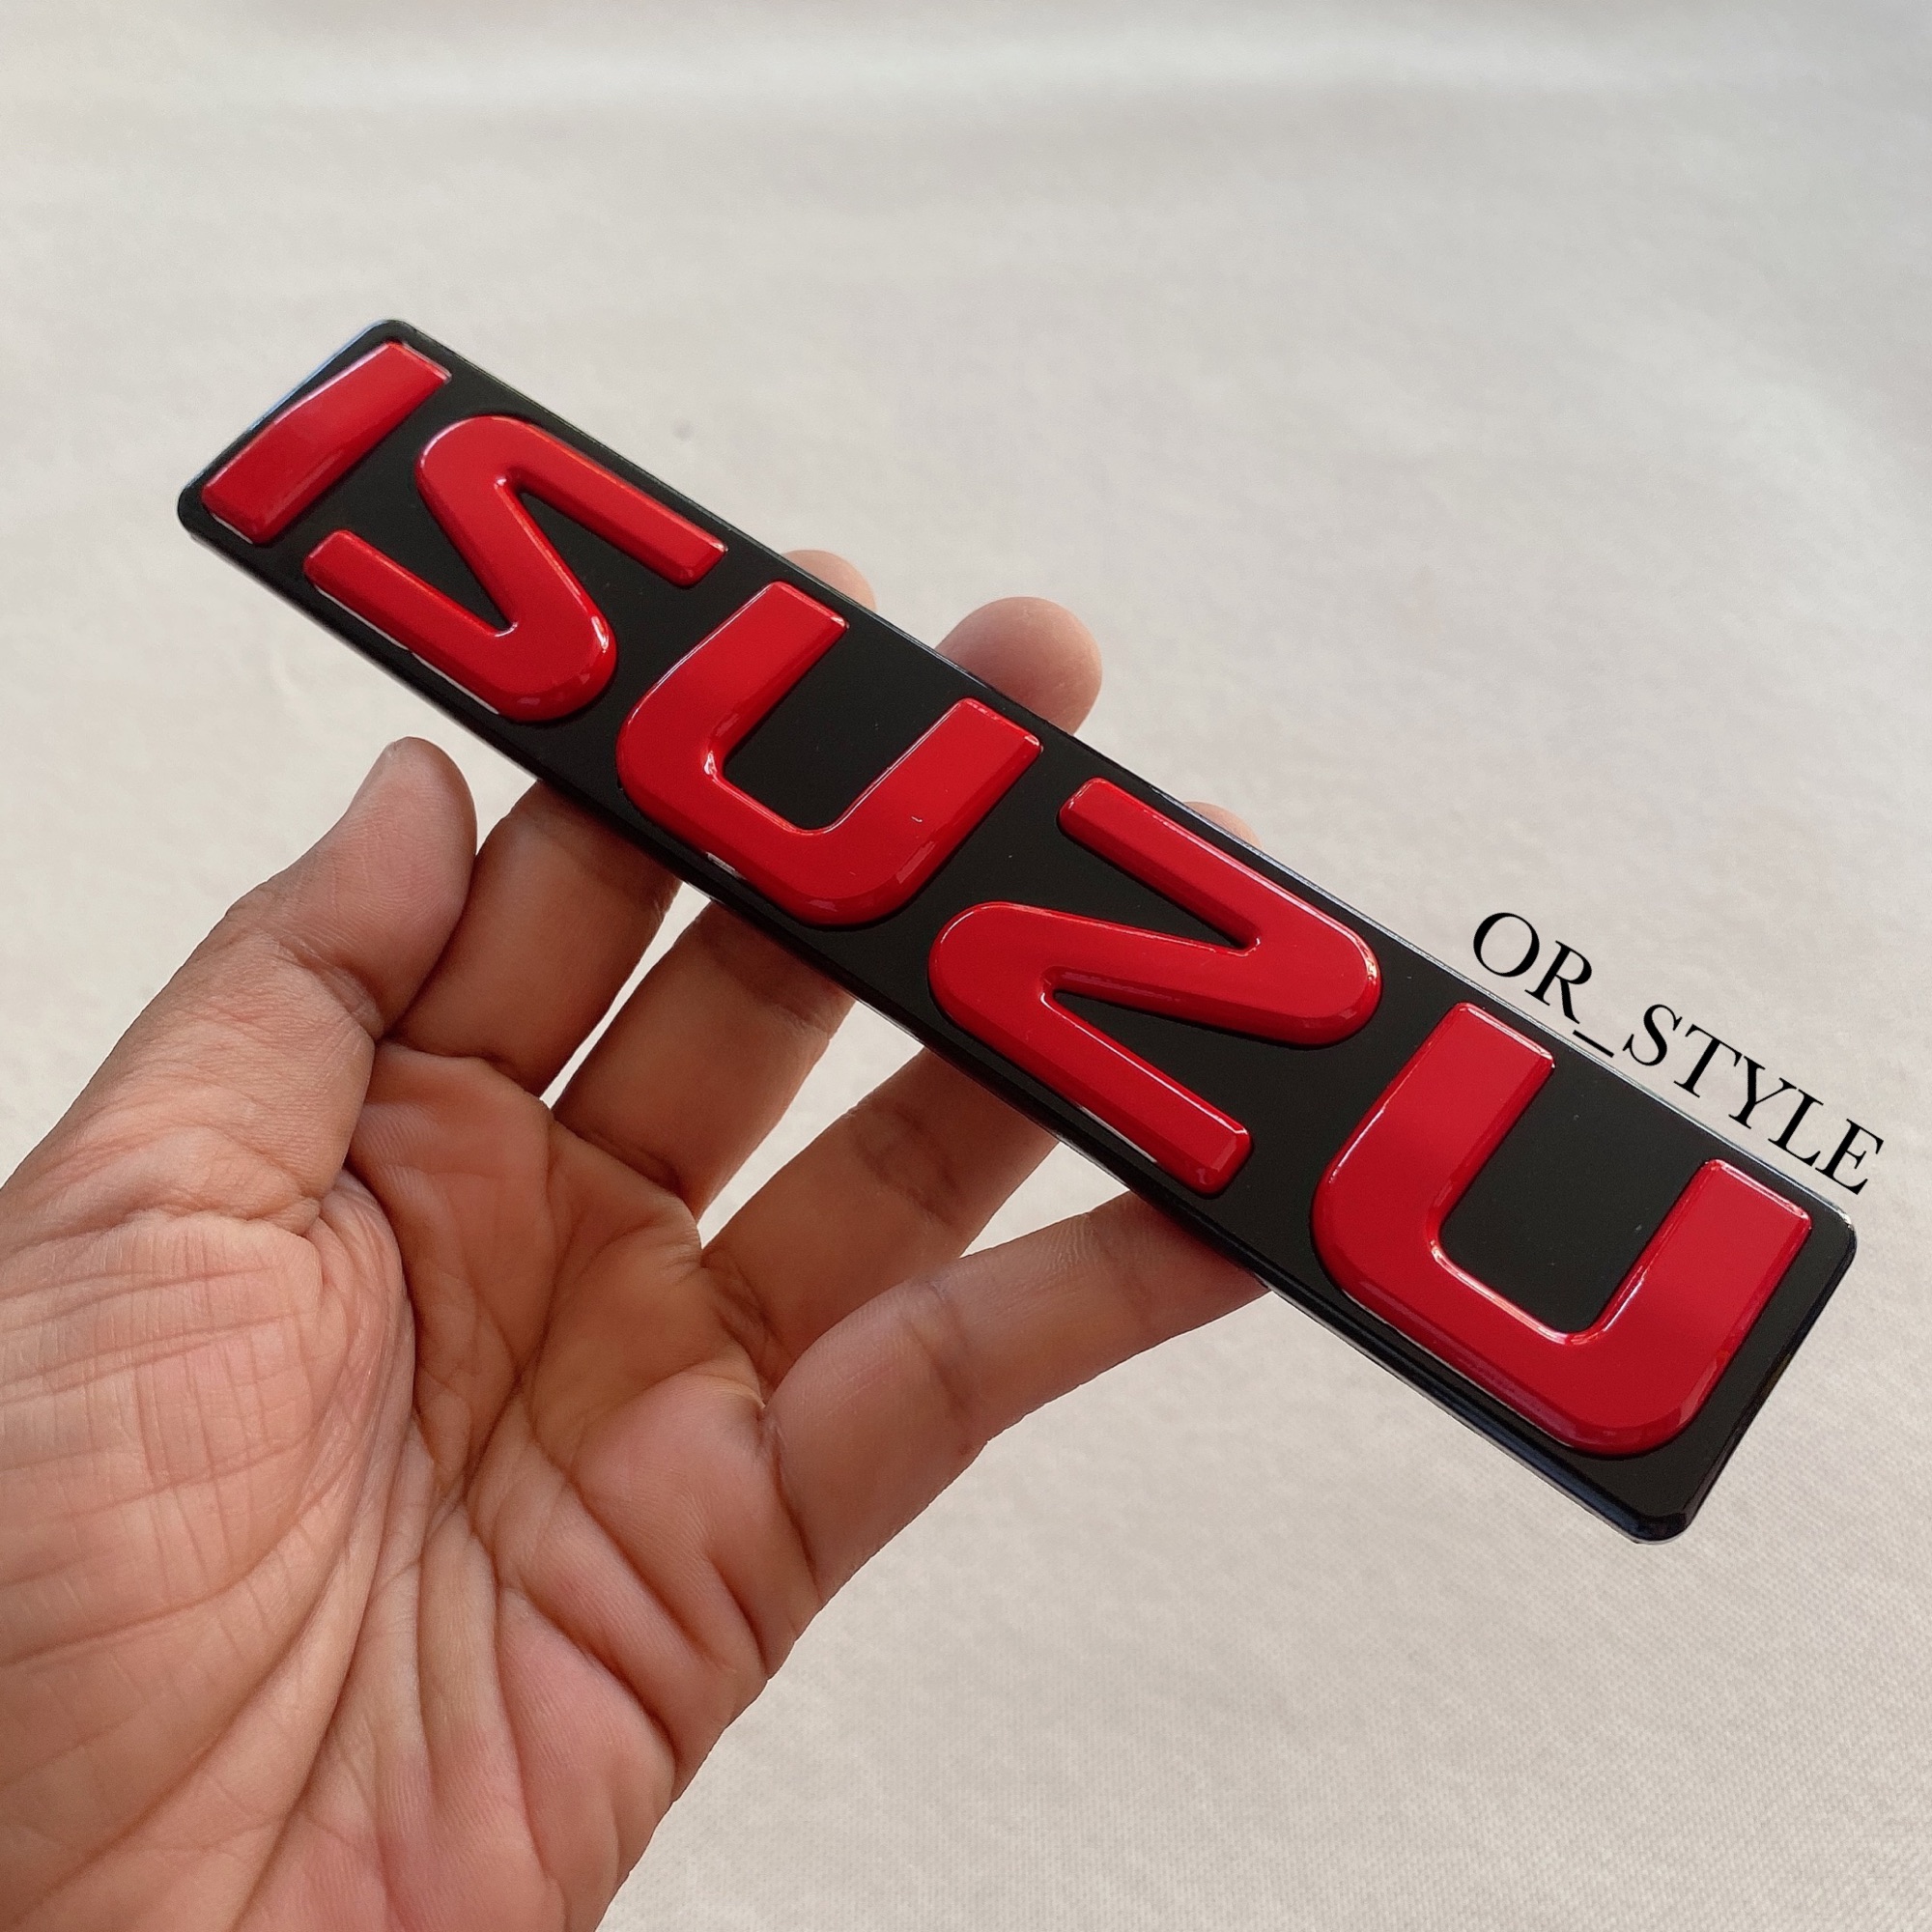 โลโก้ ISUZU ติดกระจัง 2007-2011 สีแดงพื้นดำ (ไซส์เล็ก) ขนาด 17.4x3.4cm